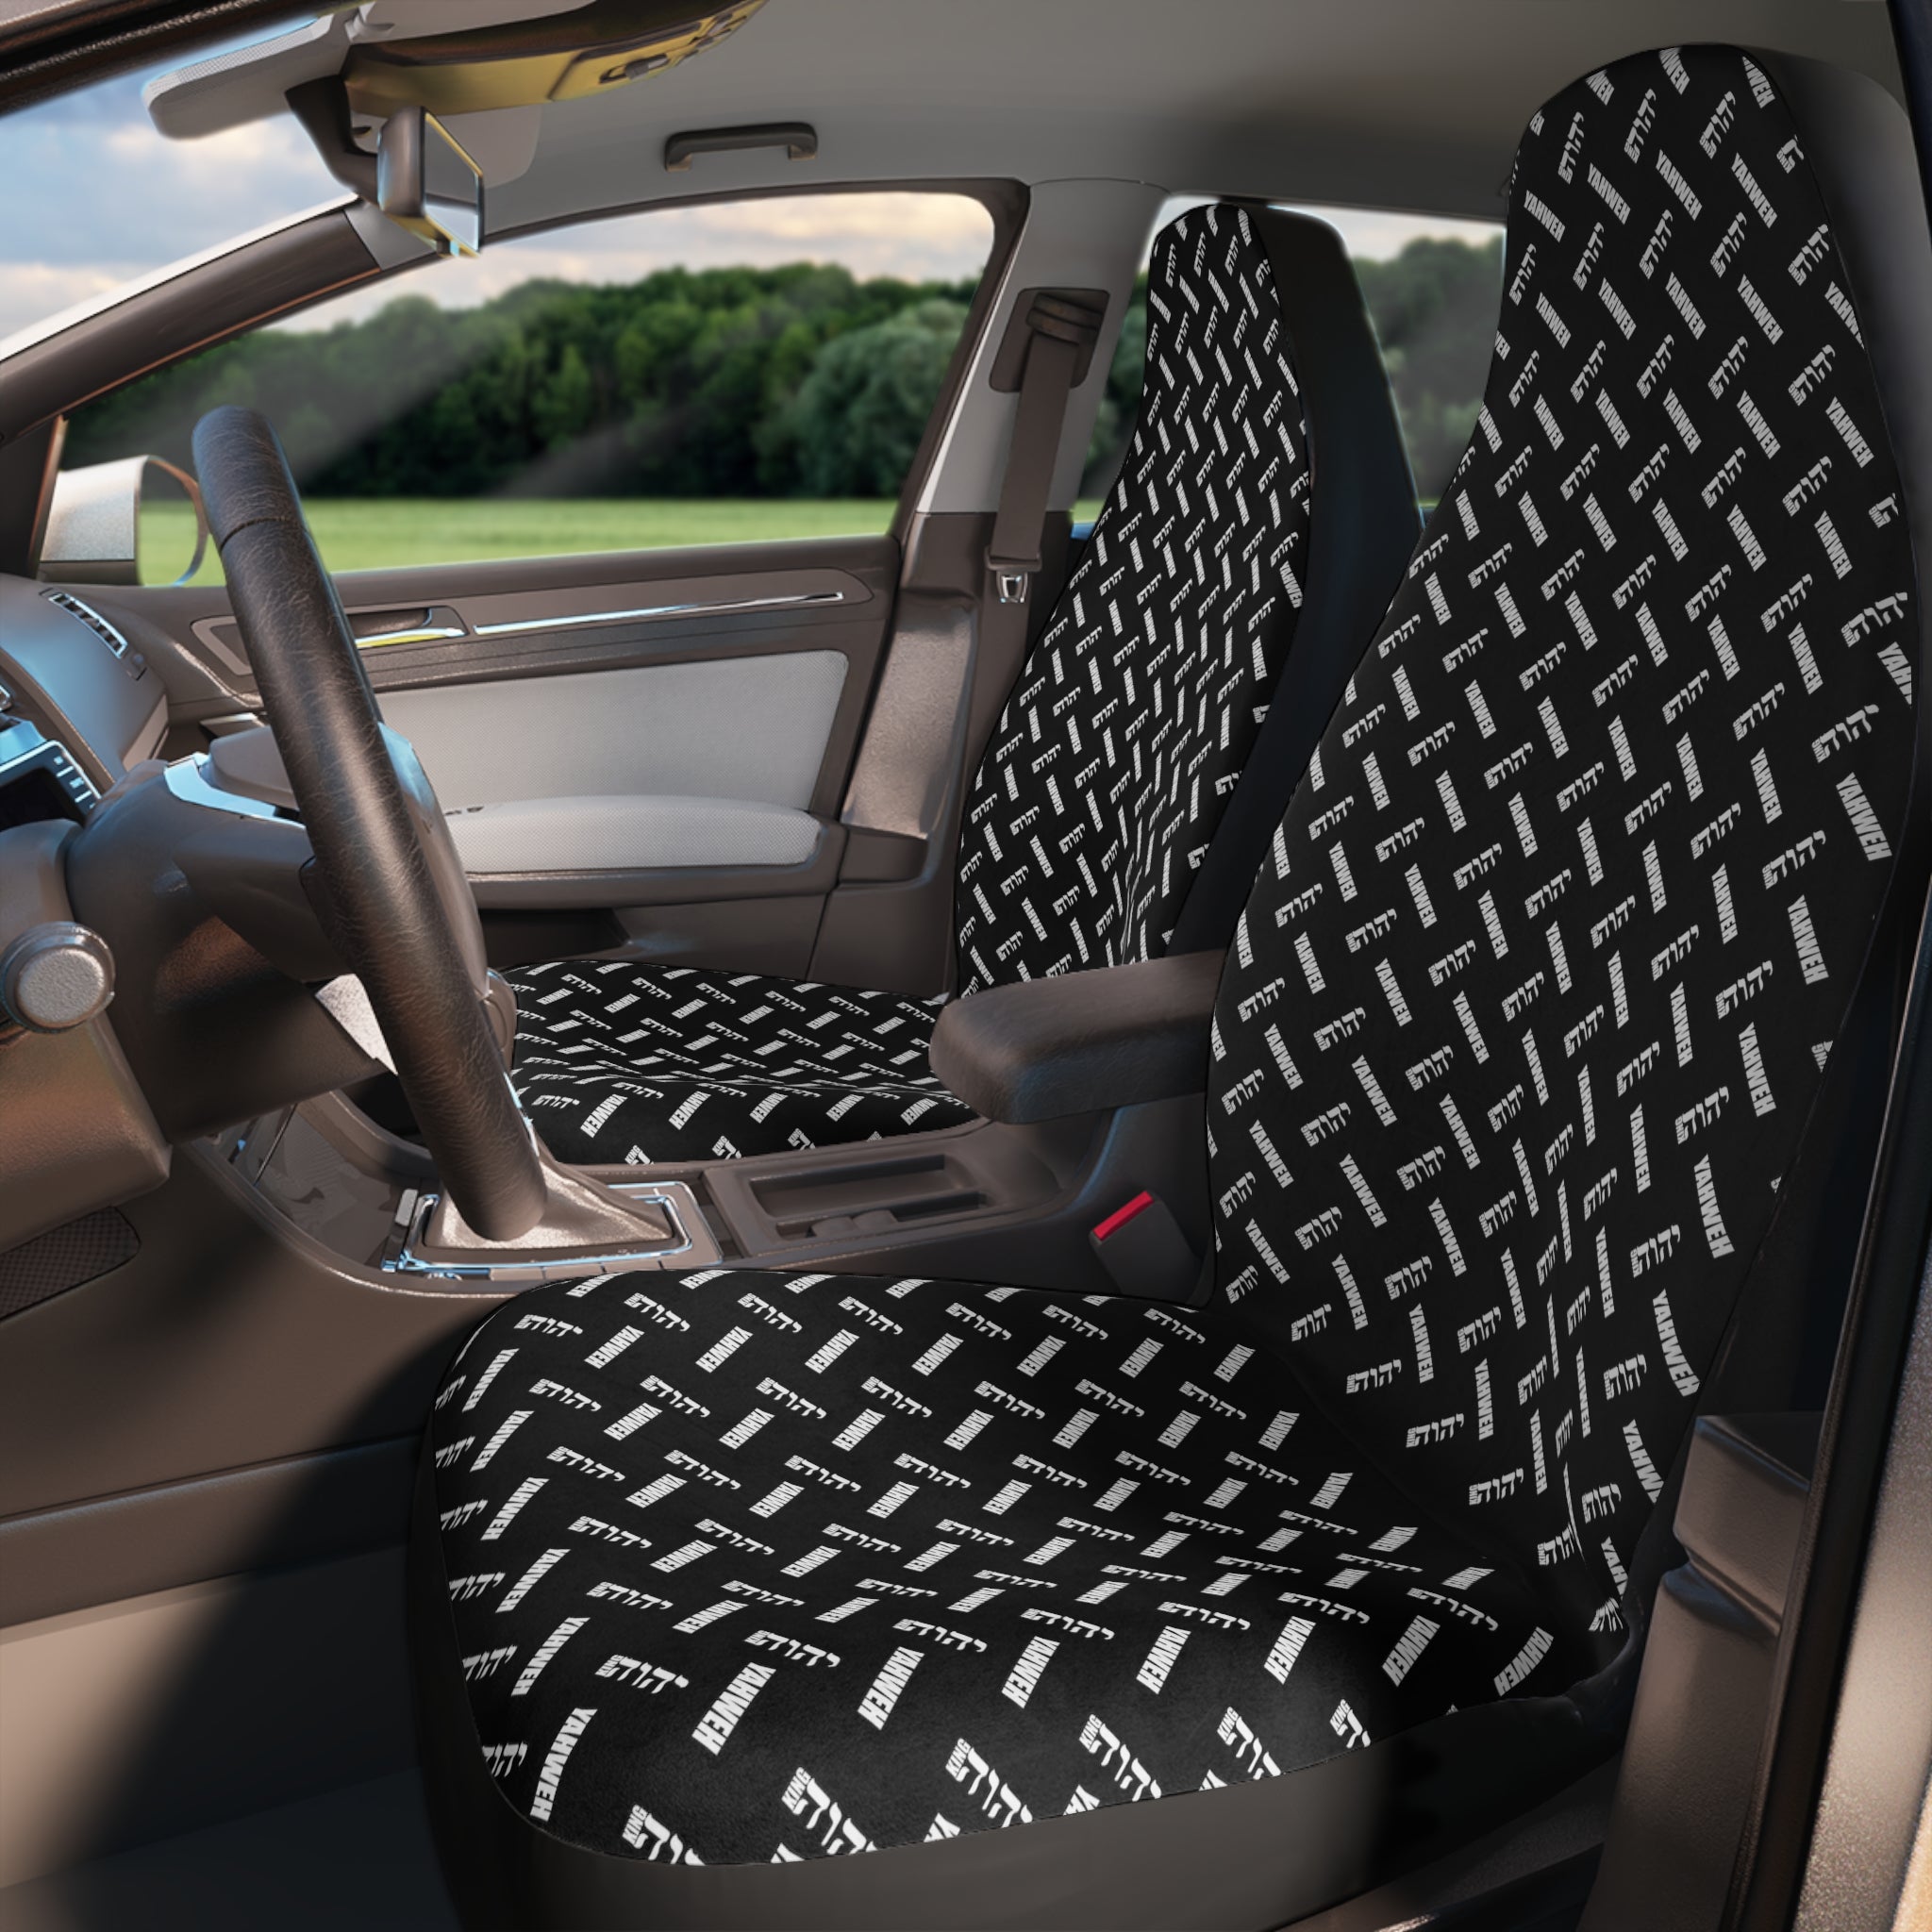 KING YAHWEH Omni 3.0 Polyester Car Seat Covers (Black)